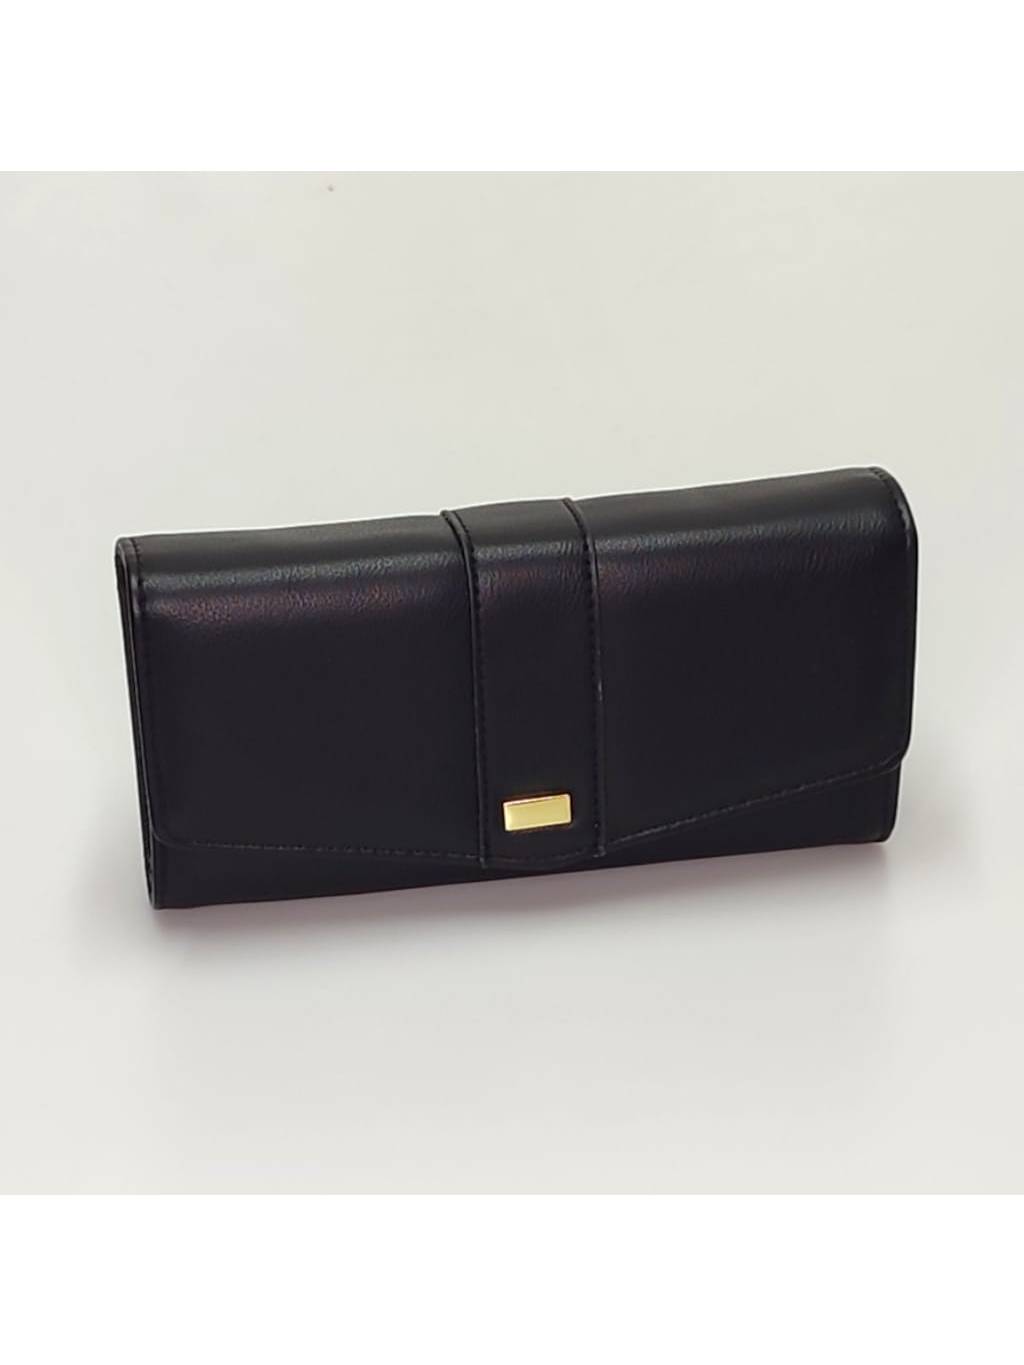 Dámska peňaženka ZY 21603 čierna www.kabelky vypredaj.eu (2)